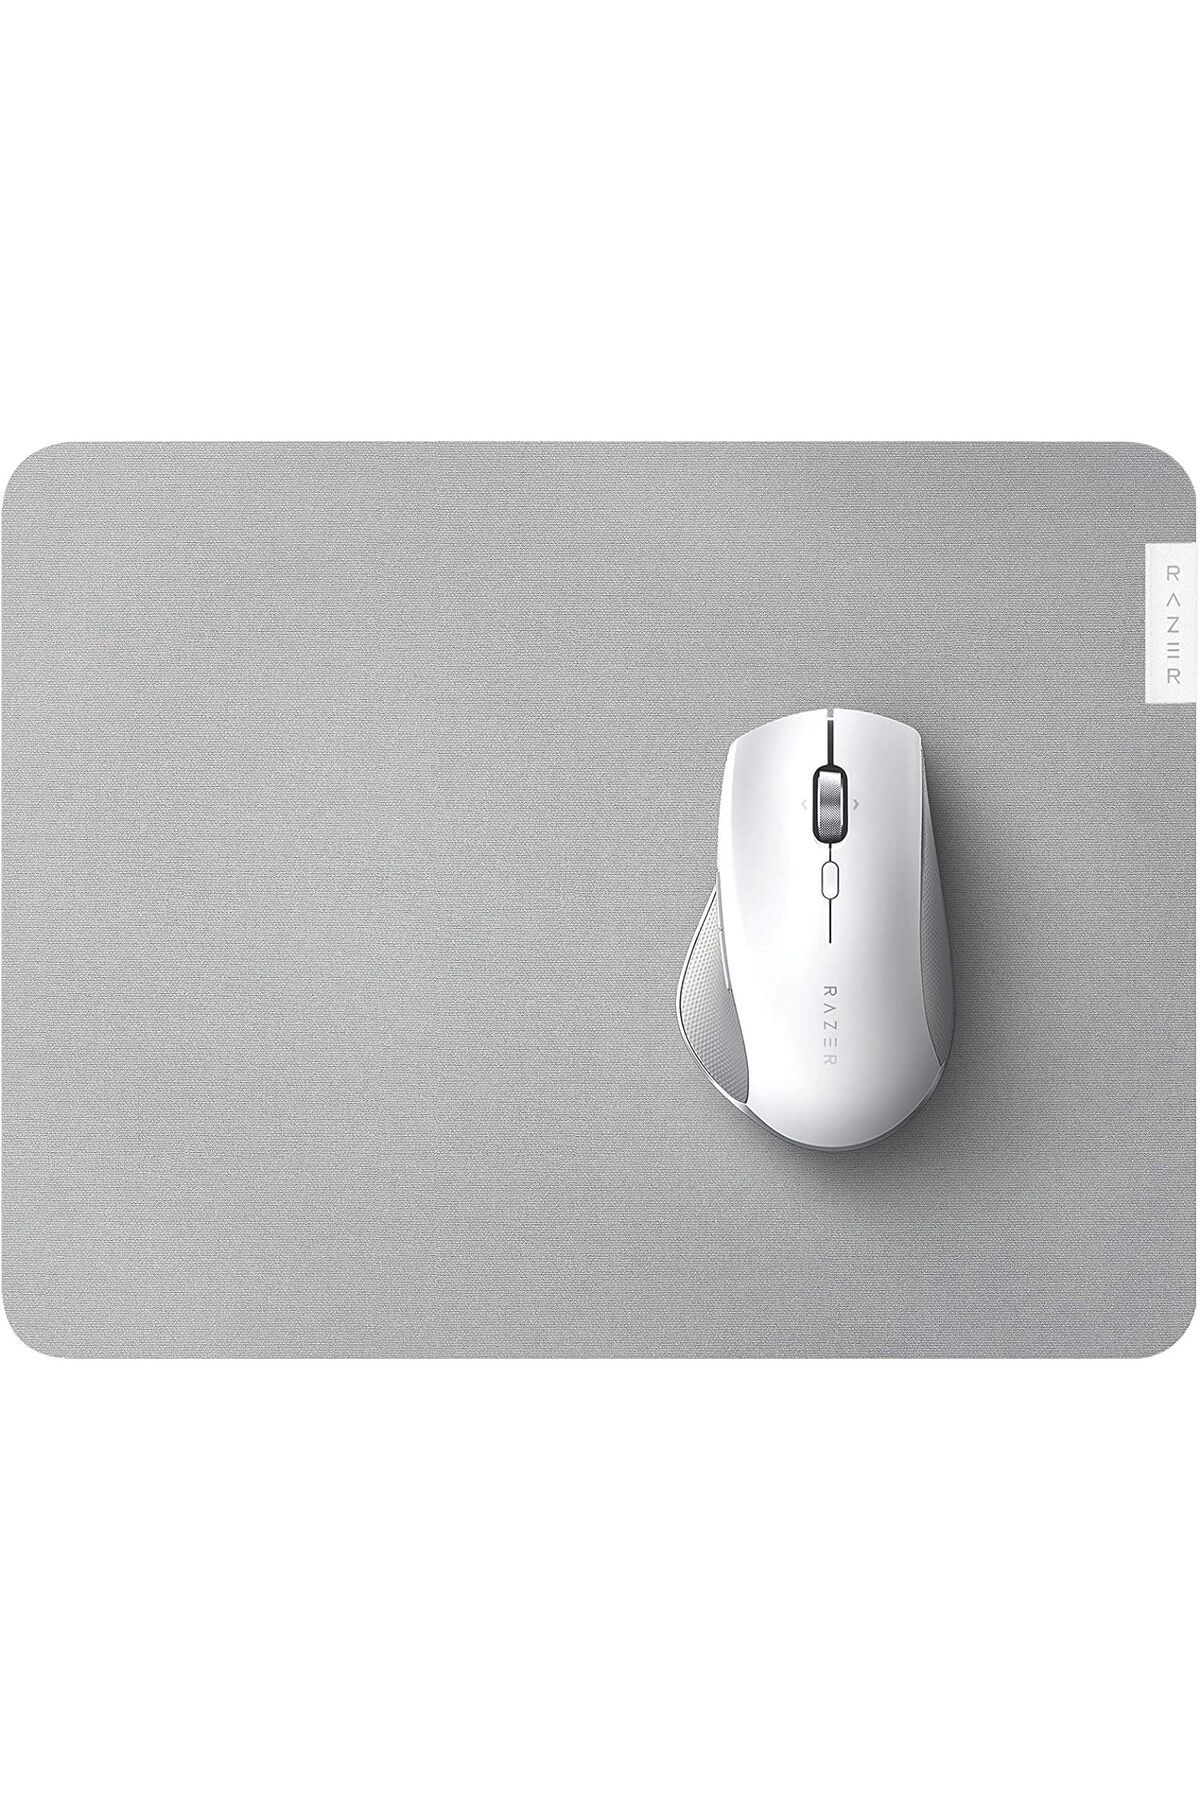 RAZER Pad Pro Glide Mousepad Rz02-03331500-r3m1